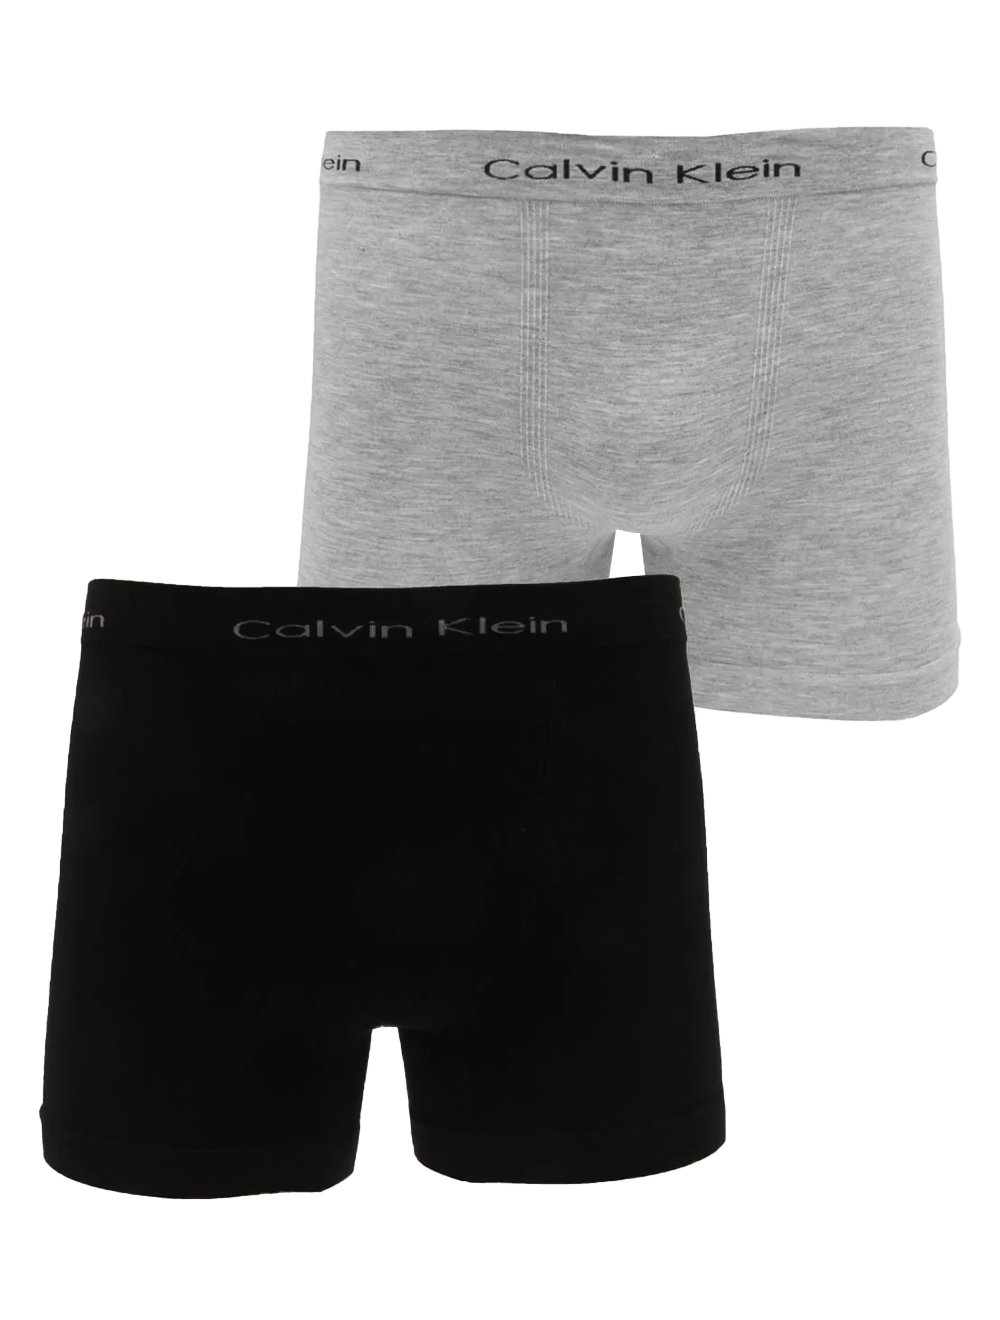 Cuecas Calvin Klein Trunk Seamless Logo Cinza e Marinho Pack 2UN